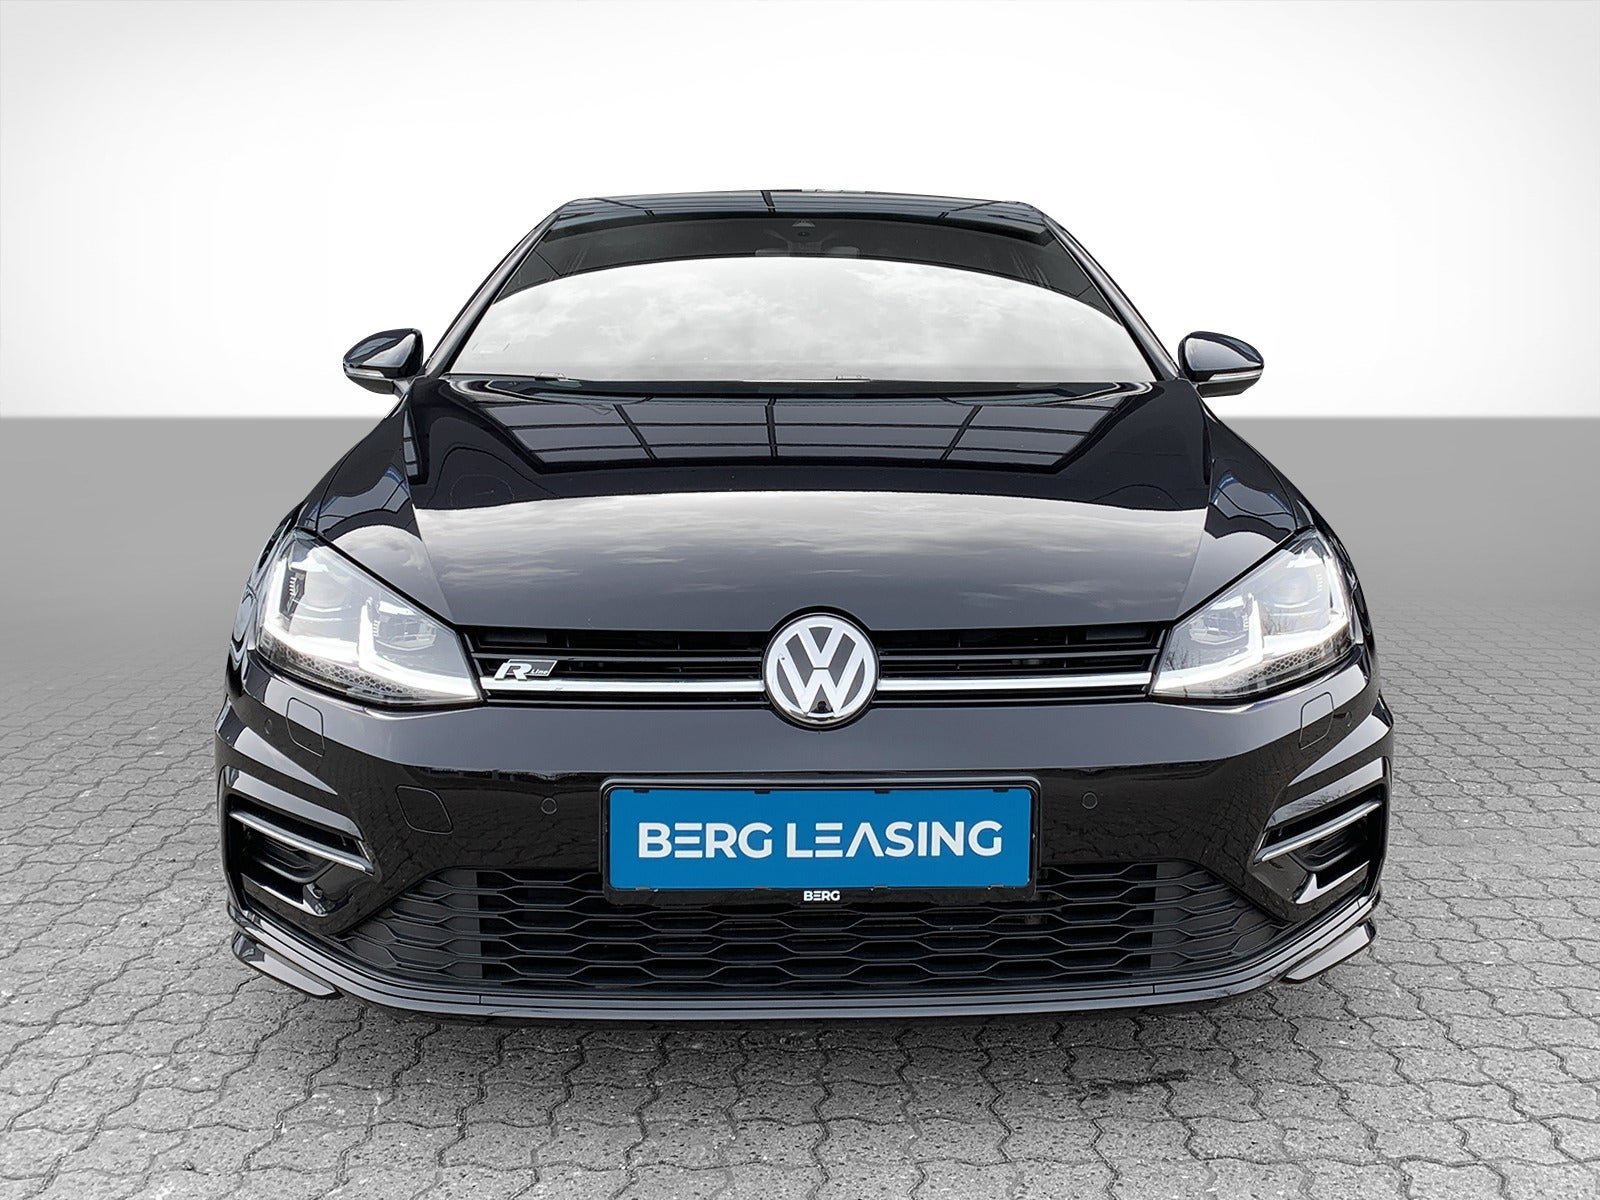 det er alt enkelt Alternativt forslag 2017 VW Golf VII - Leasing - Berg Leasing